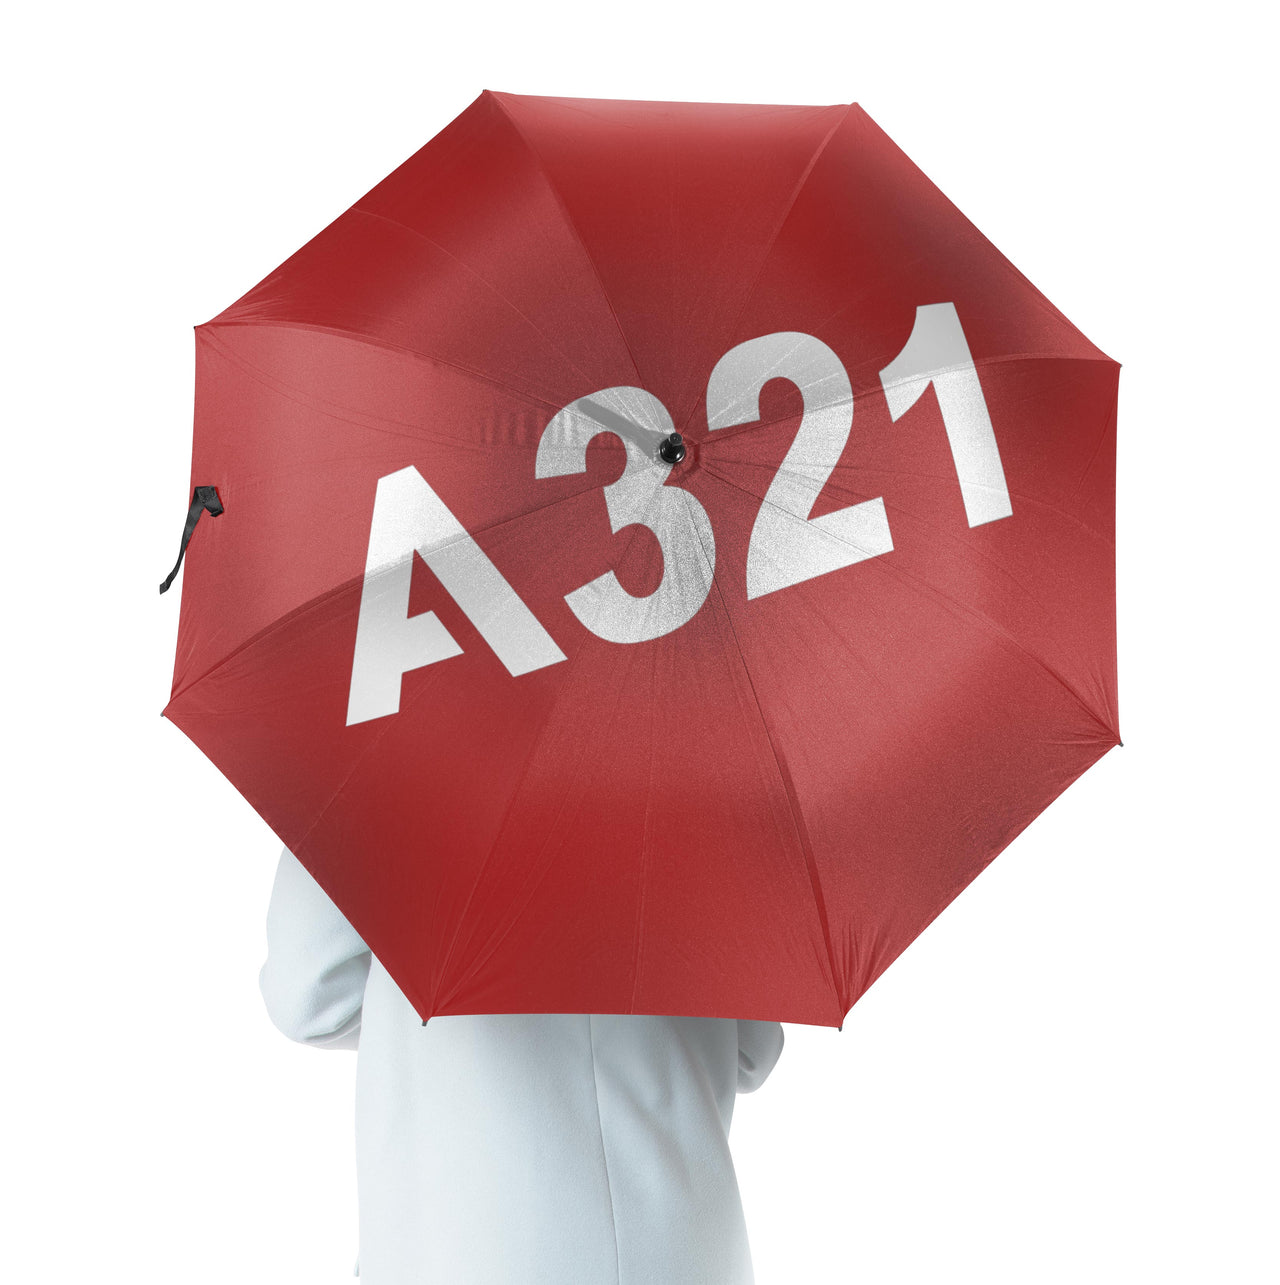 A321 Flat Text Designed Umbrella